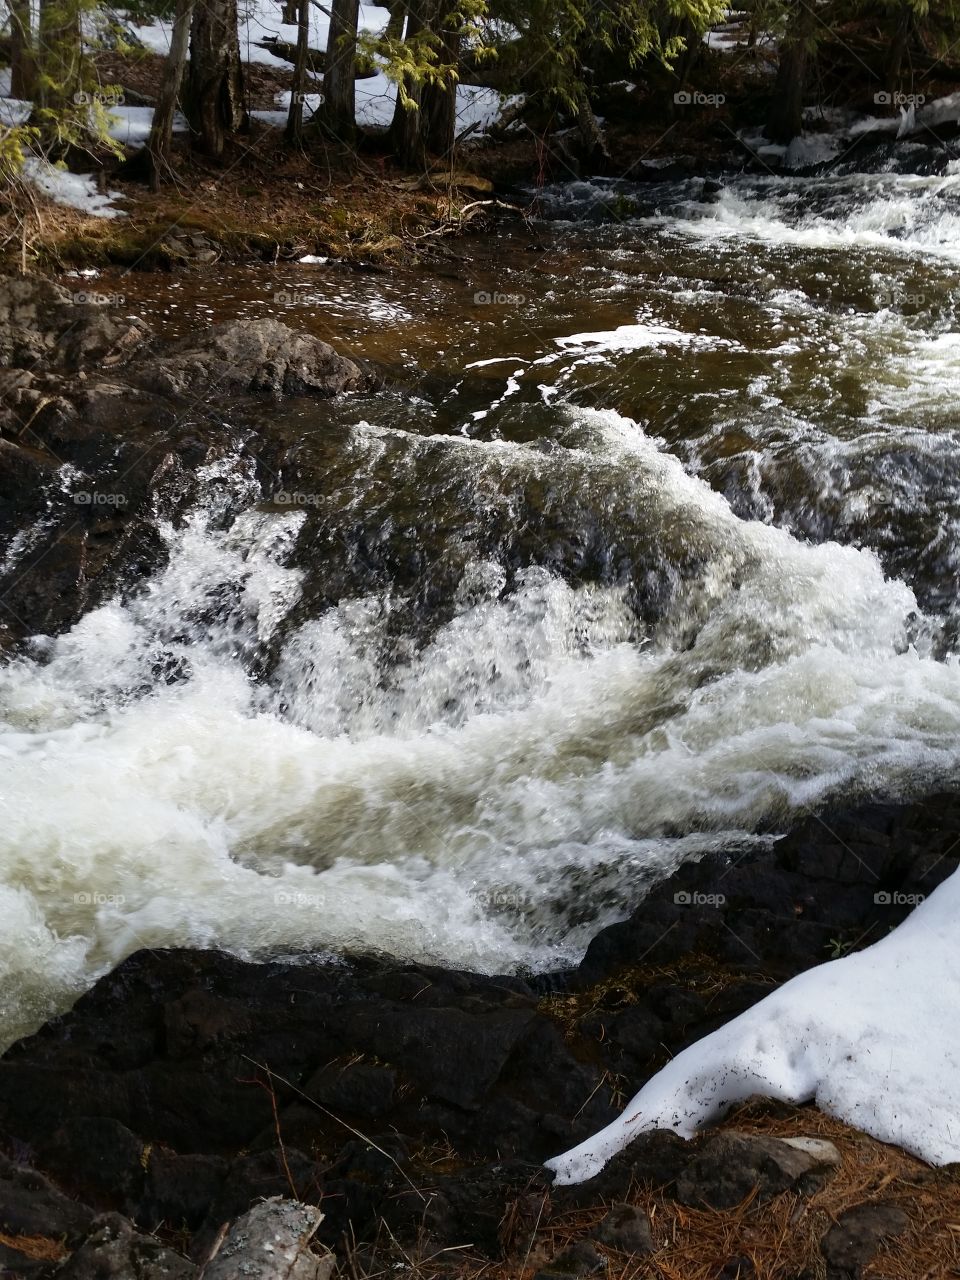 Brockway Falls Rapids